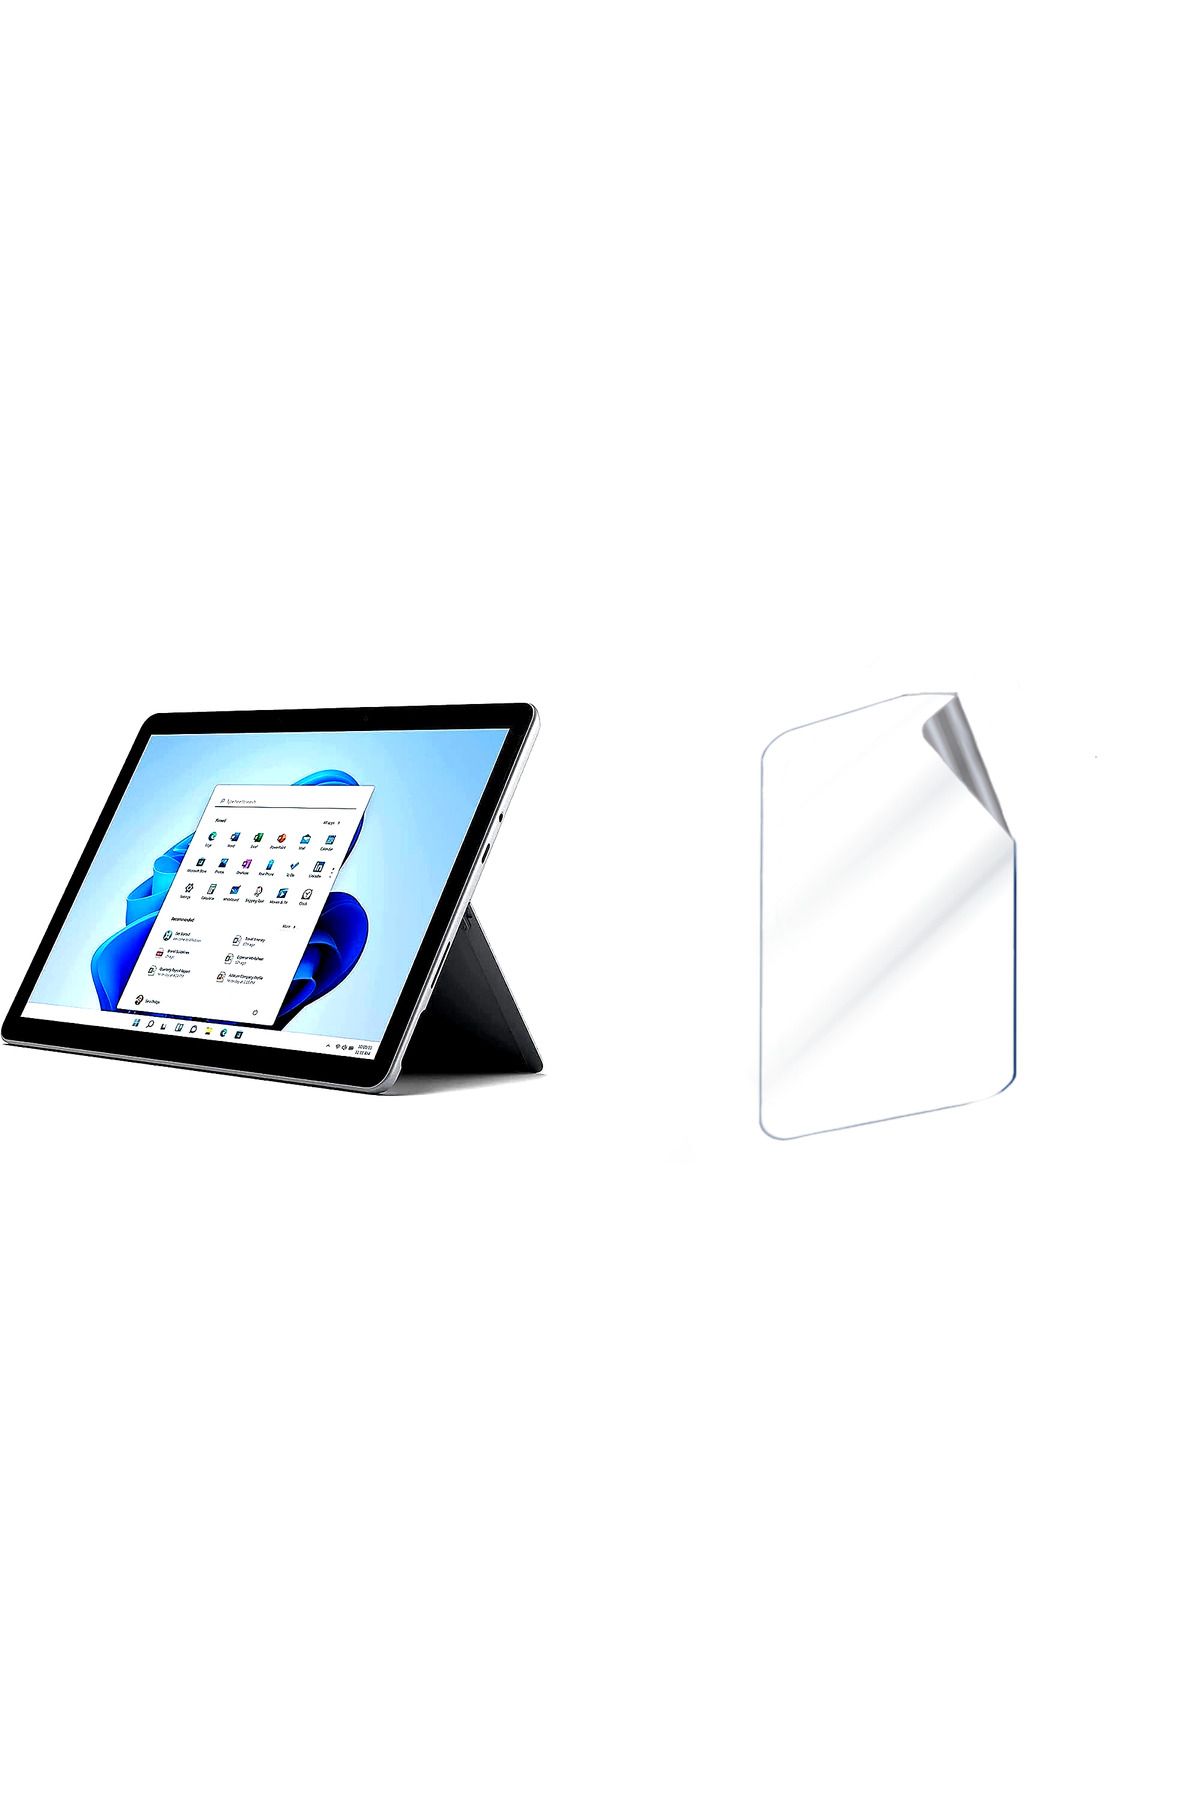 Elektrofoni Microsoft Surface Go tablet Uyumlu Hydrojel Esnek Kırılmaz Cam Ekran Koruyucu film 8684609220339